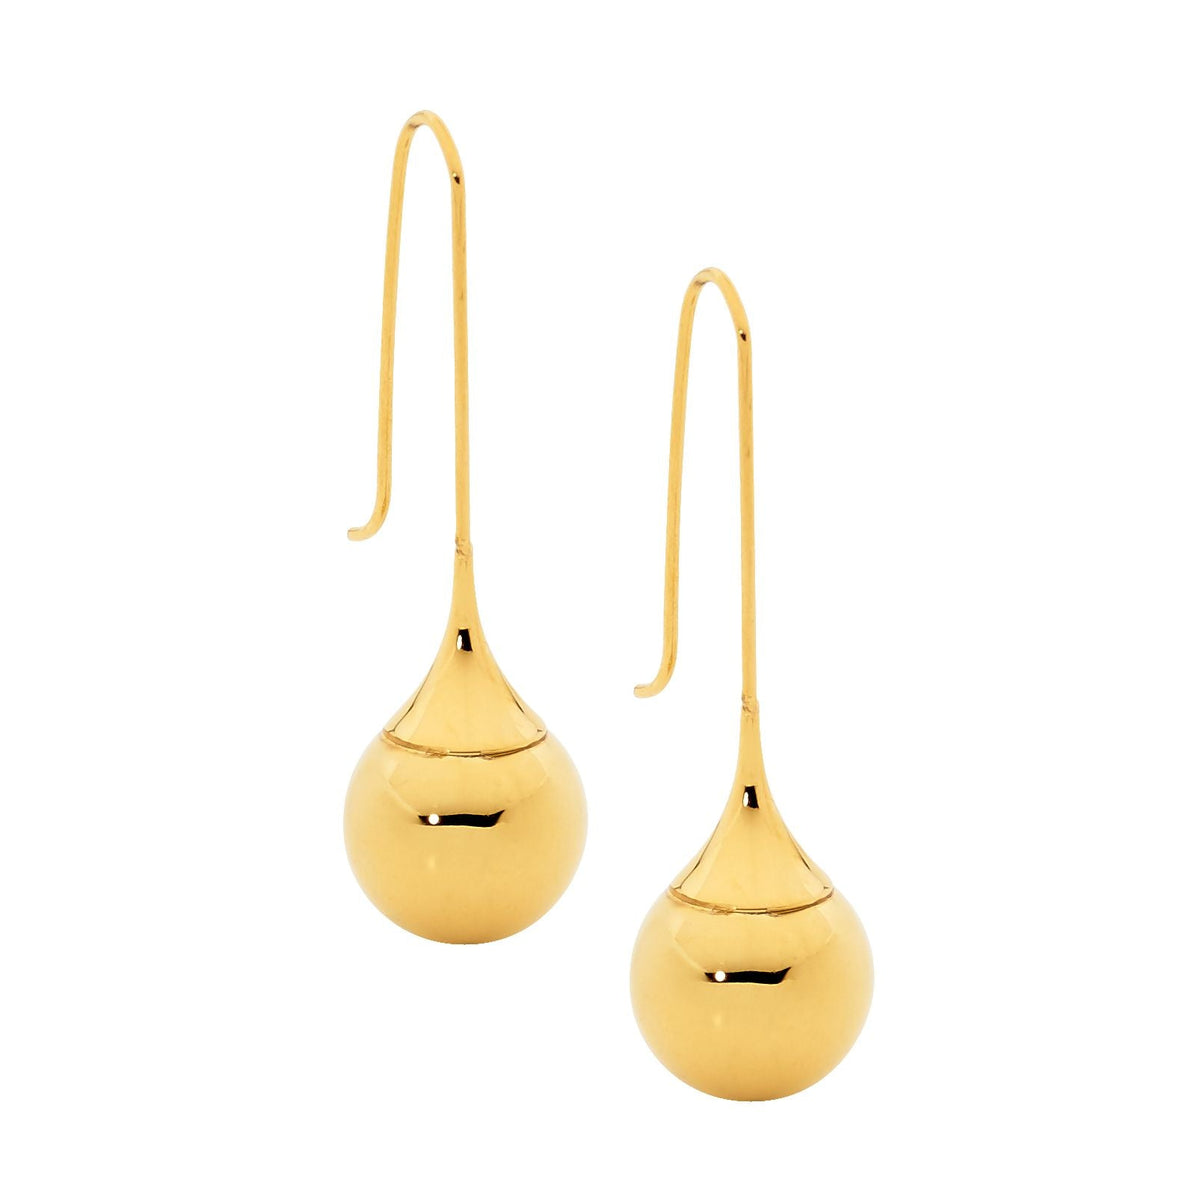 Stainless Steel Earring Gold - SE168G - Markbridge Jewellers